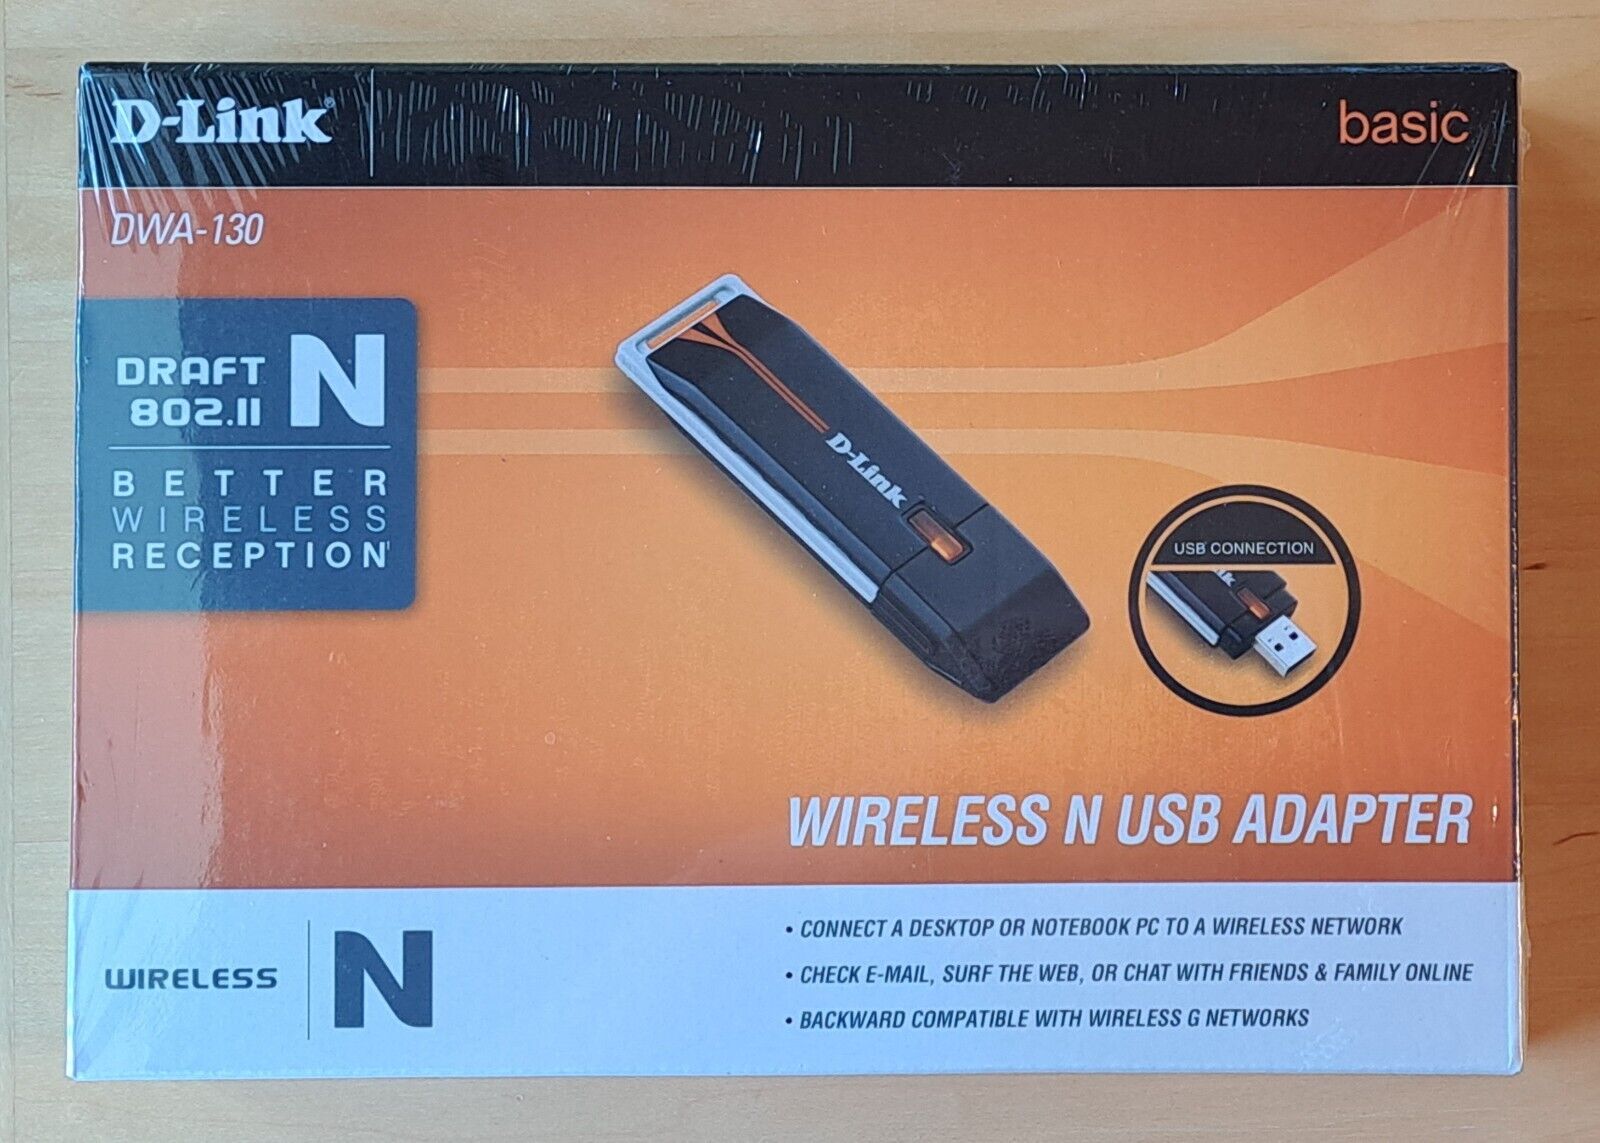 D-link DWA-130 (790069303043) Wireless N USB Adapter